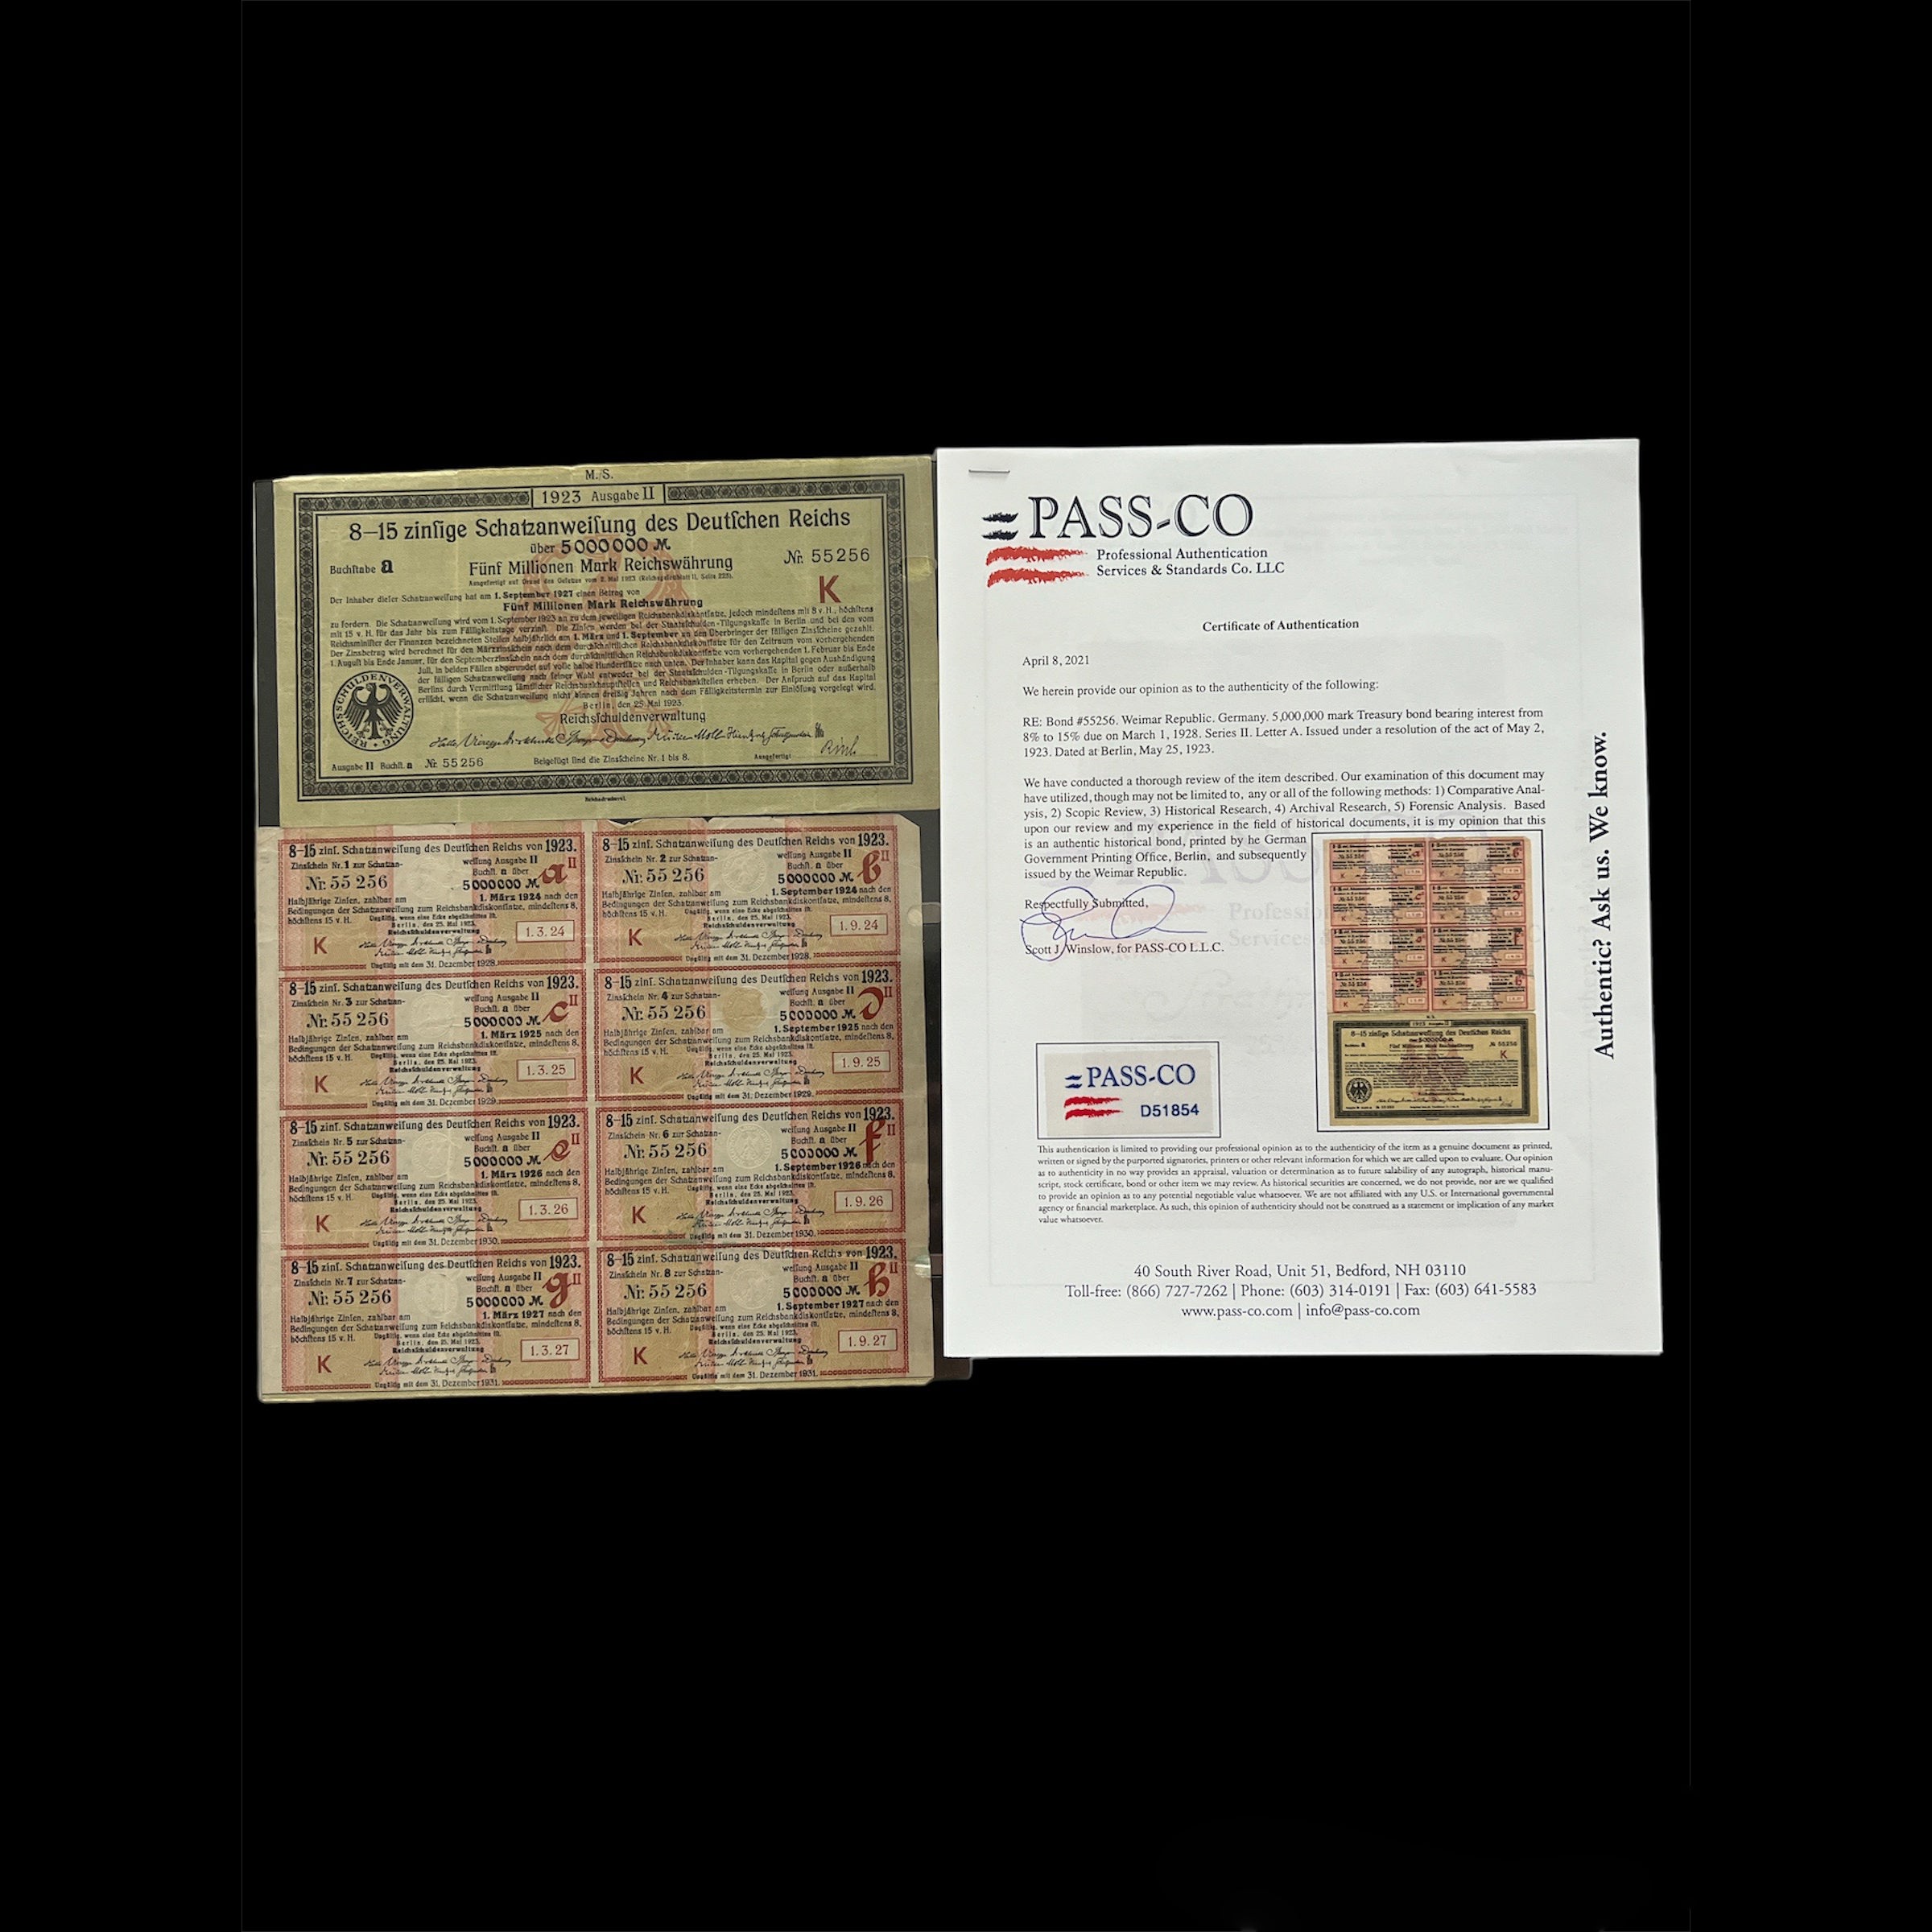 Bono del Tesoro de Alemania de 1923 – 8,15% – 5 millones de marcos con certificación Passco